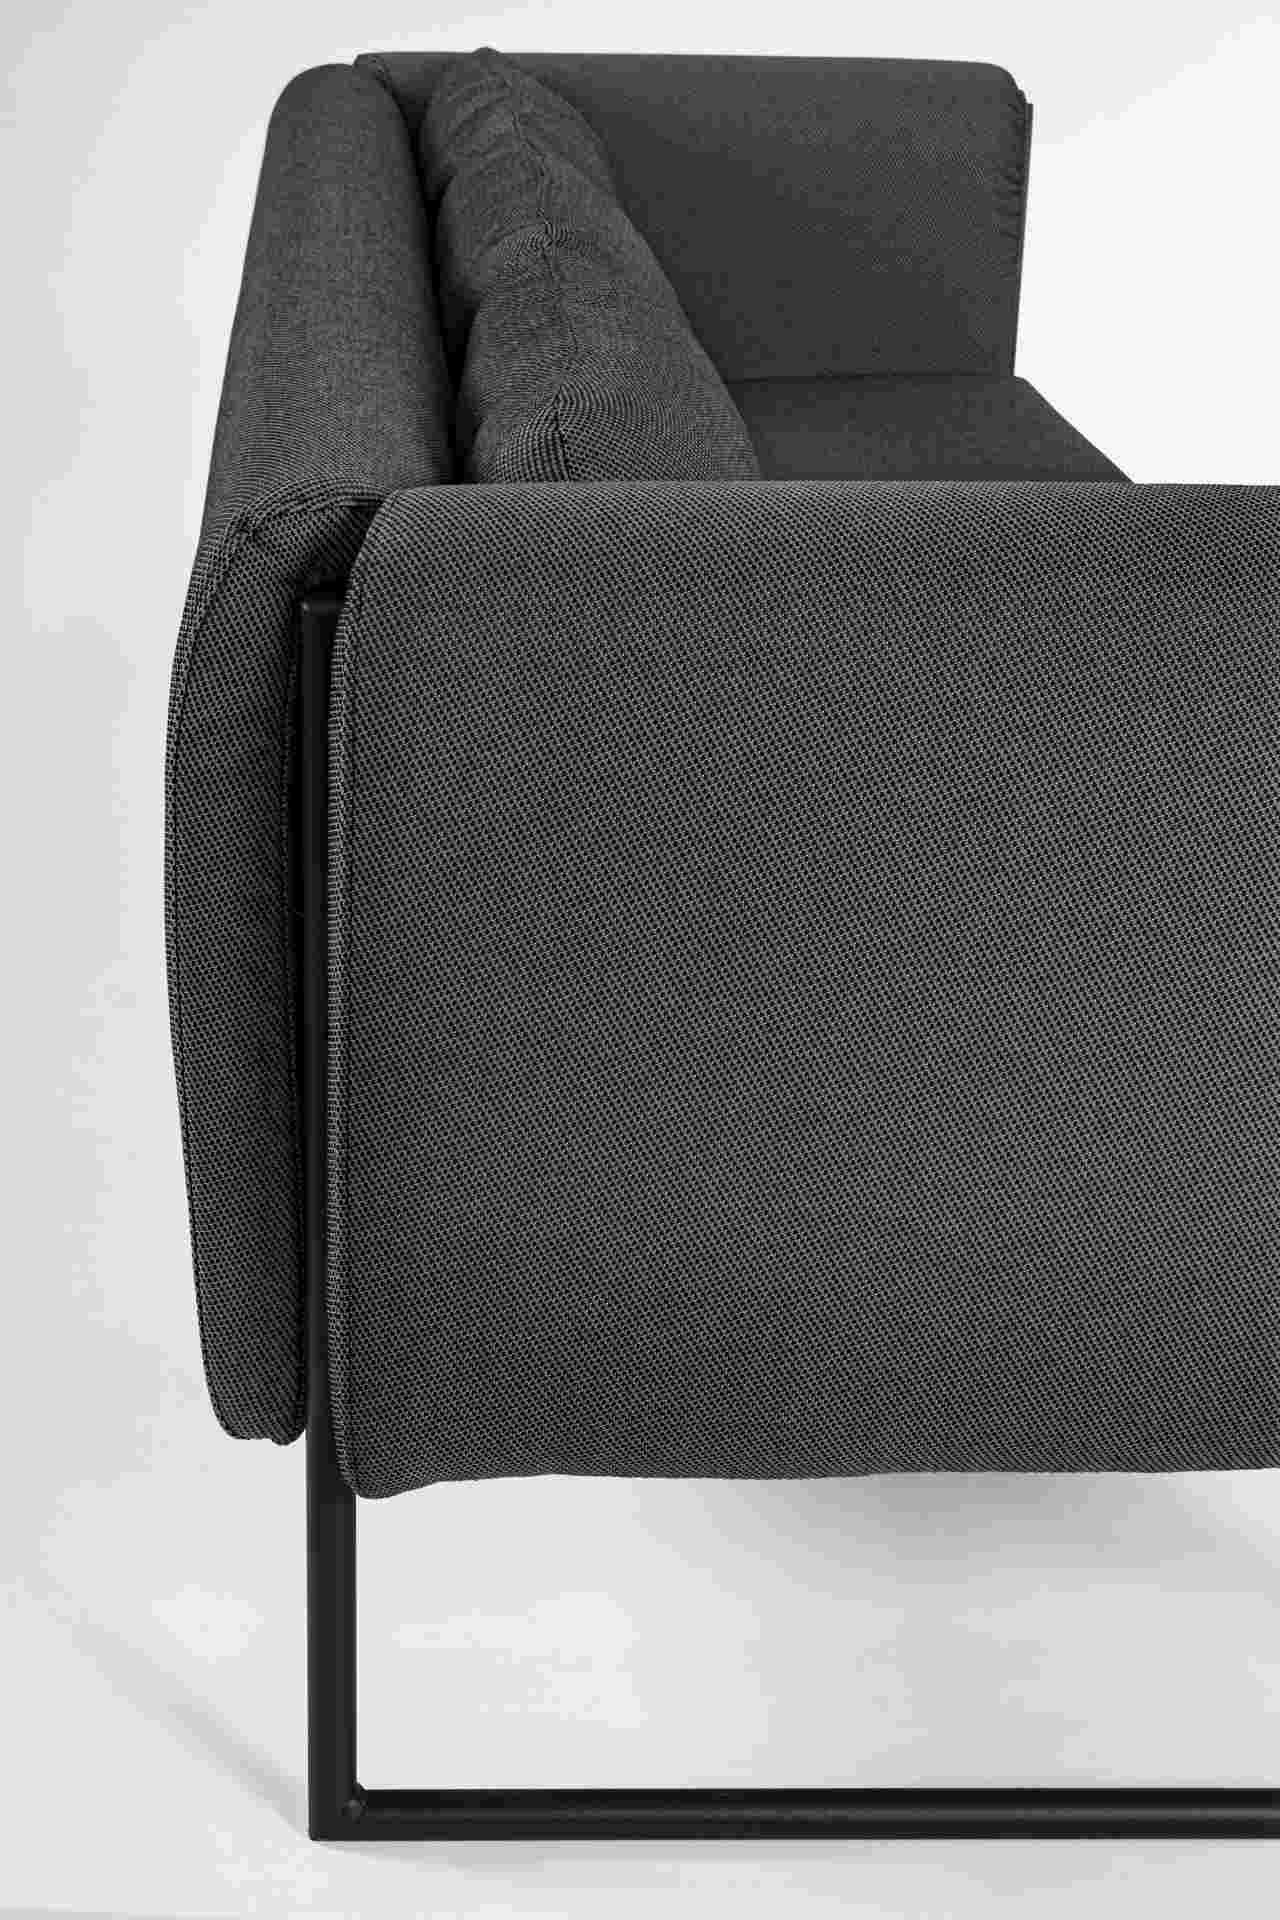 Das Gartensofa Pixel überzeugt mit seinem modernen Design. Gefertigt wurde es aus Olefin-Stoff, welcher einen Anthrazit Farbton besitzt. Das Gestell ist aus Aluminium und hat eine schwarze Farbe. Das Sofa verfügt über eine Sitzhöhe von 42 cm und ist für d